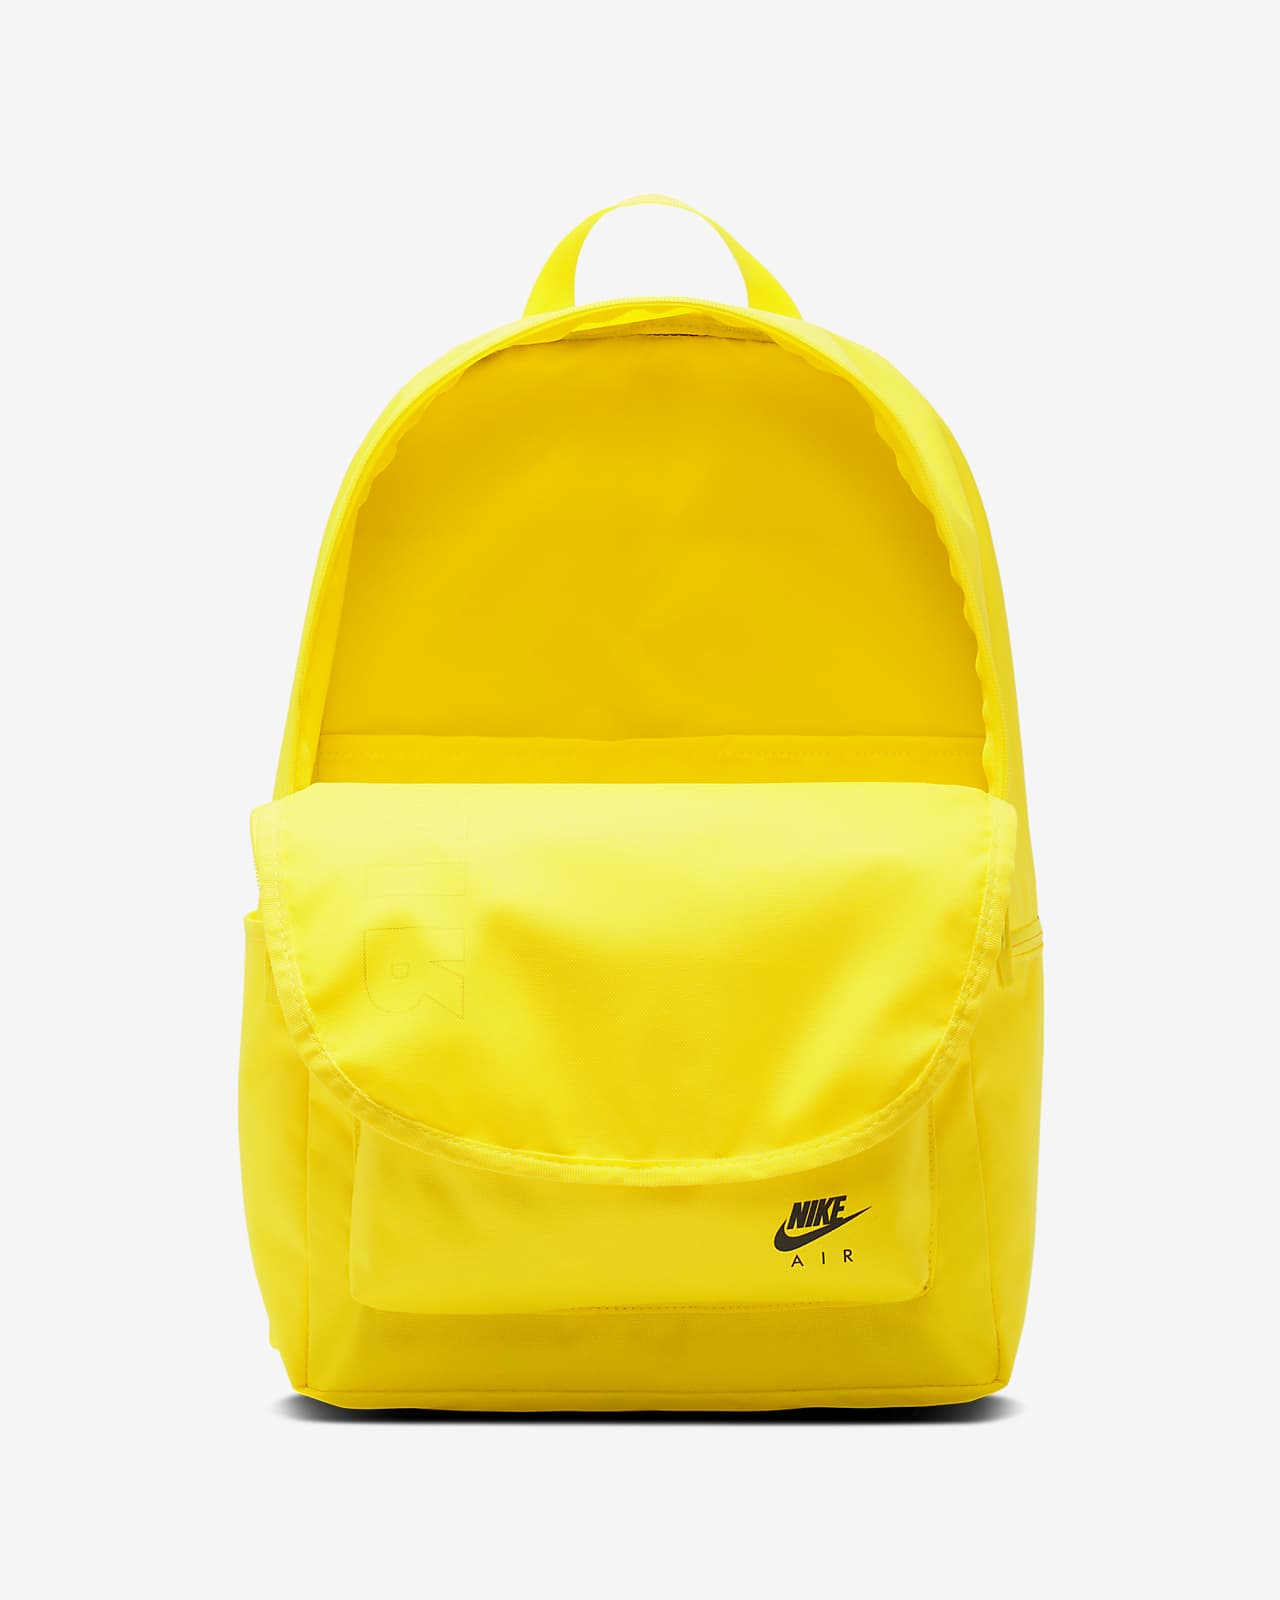 colorful nike backpack